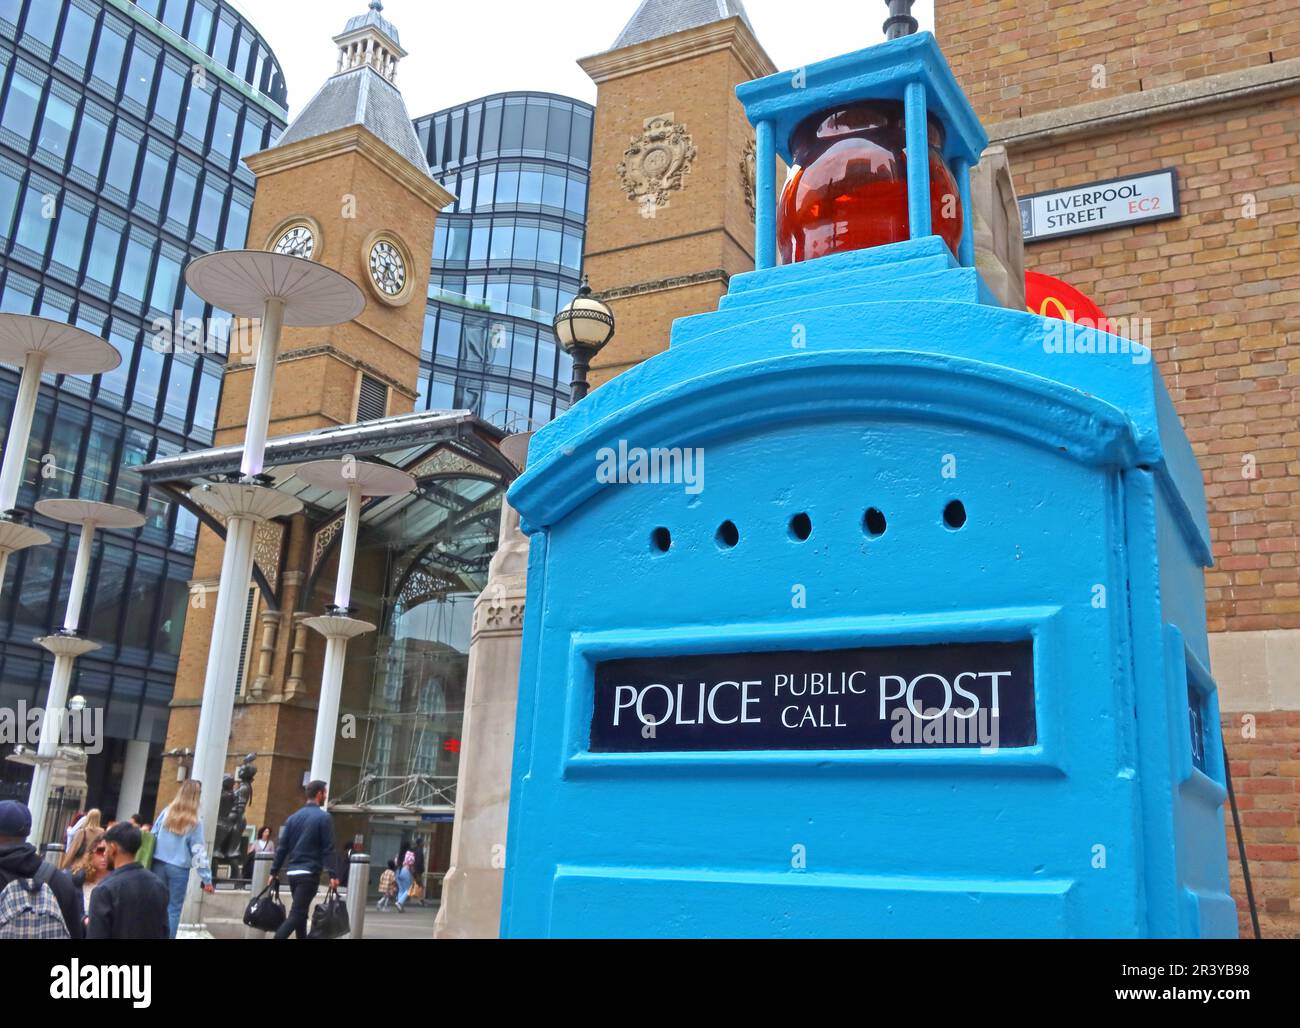 Poste d'appel public de la police britannique Ericsson Blue - à la gare de Liverpool Street (est), 53 Liverpool Street, Londres, Angleterre, Royaume-Uni, EC2M 7PR Banque D'Images